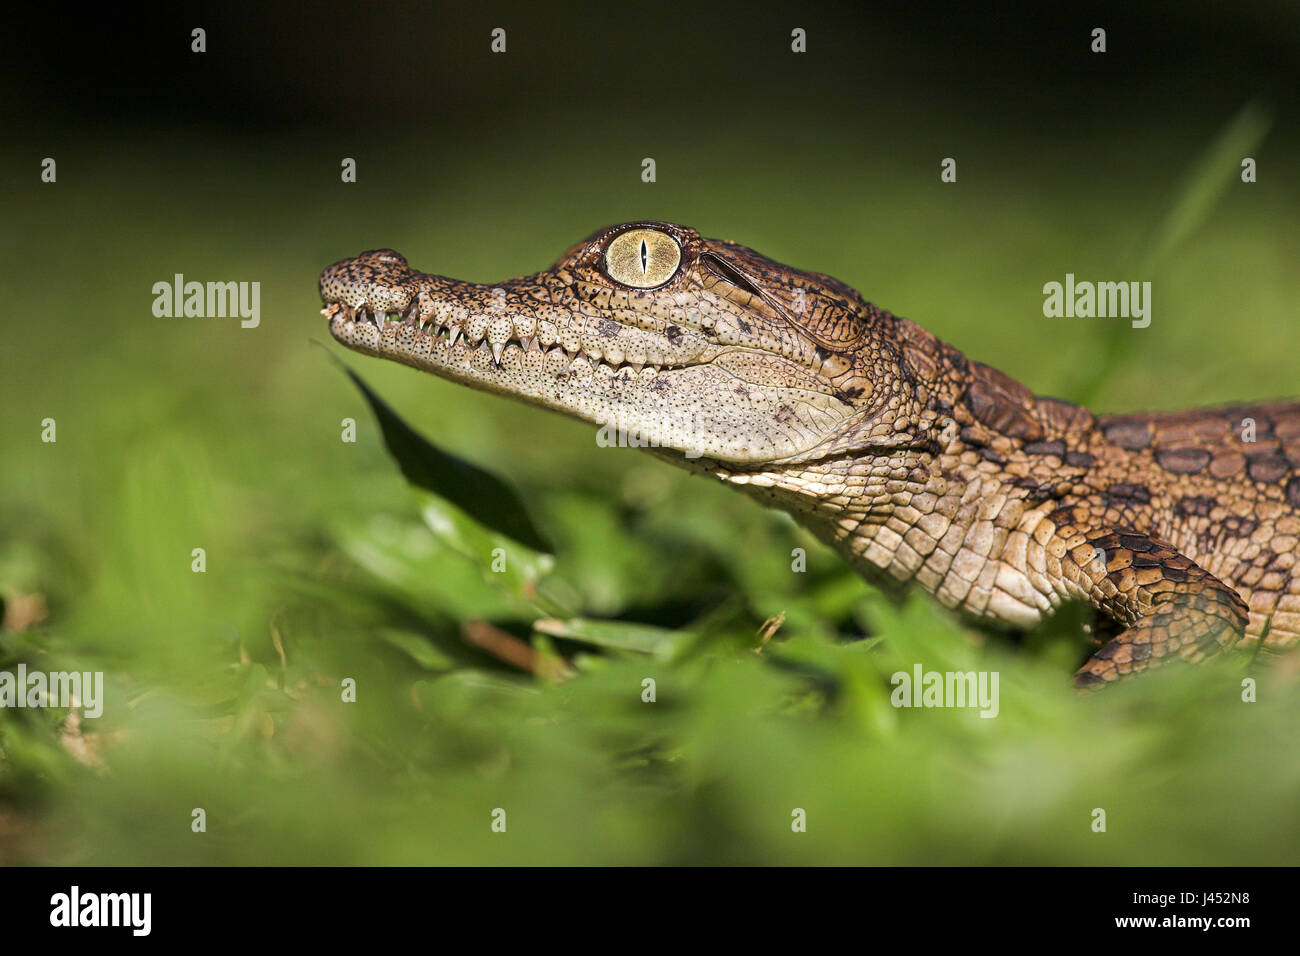 Retrato de un cocodrilo del Nilo la eclosión Foto de stock